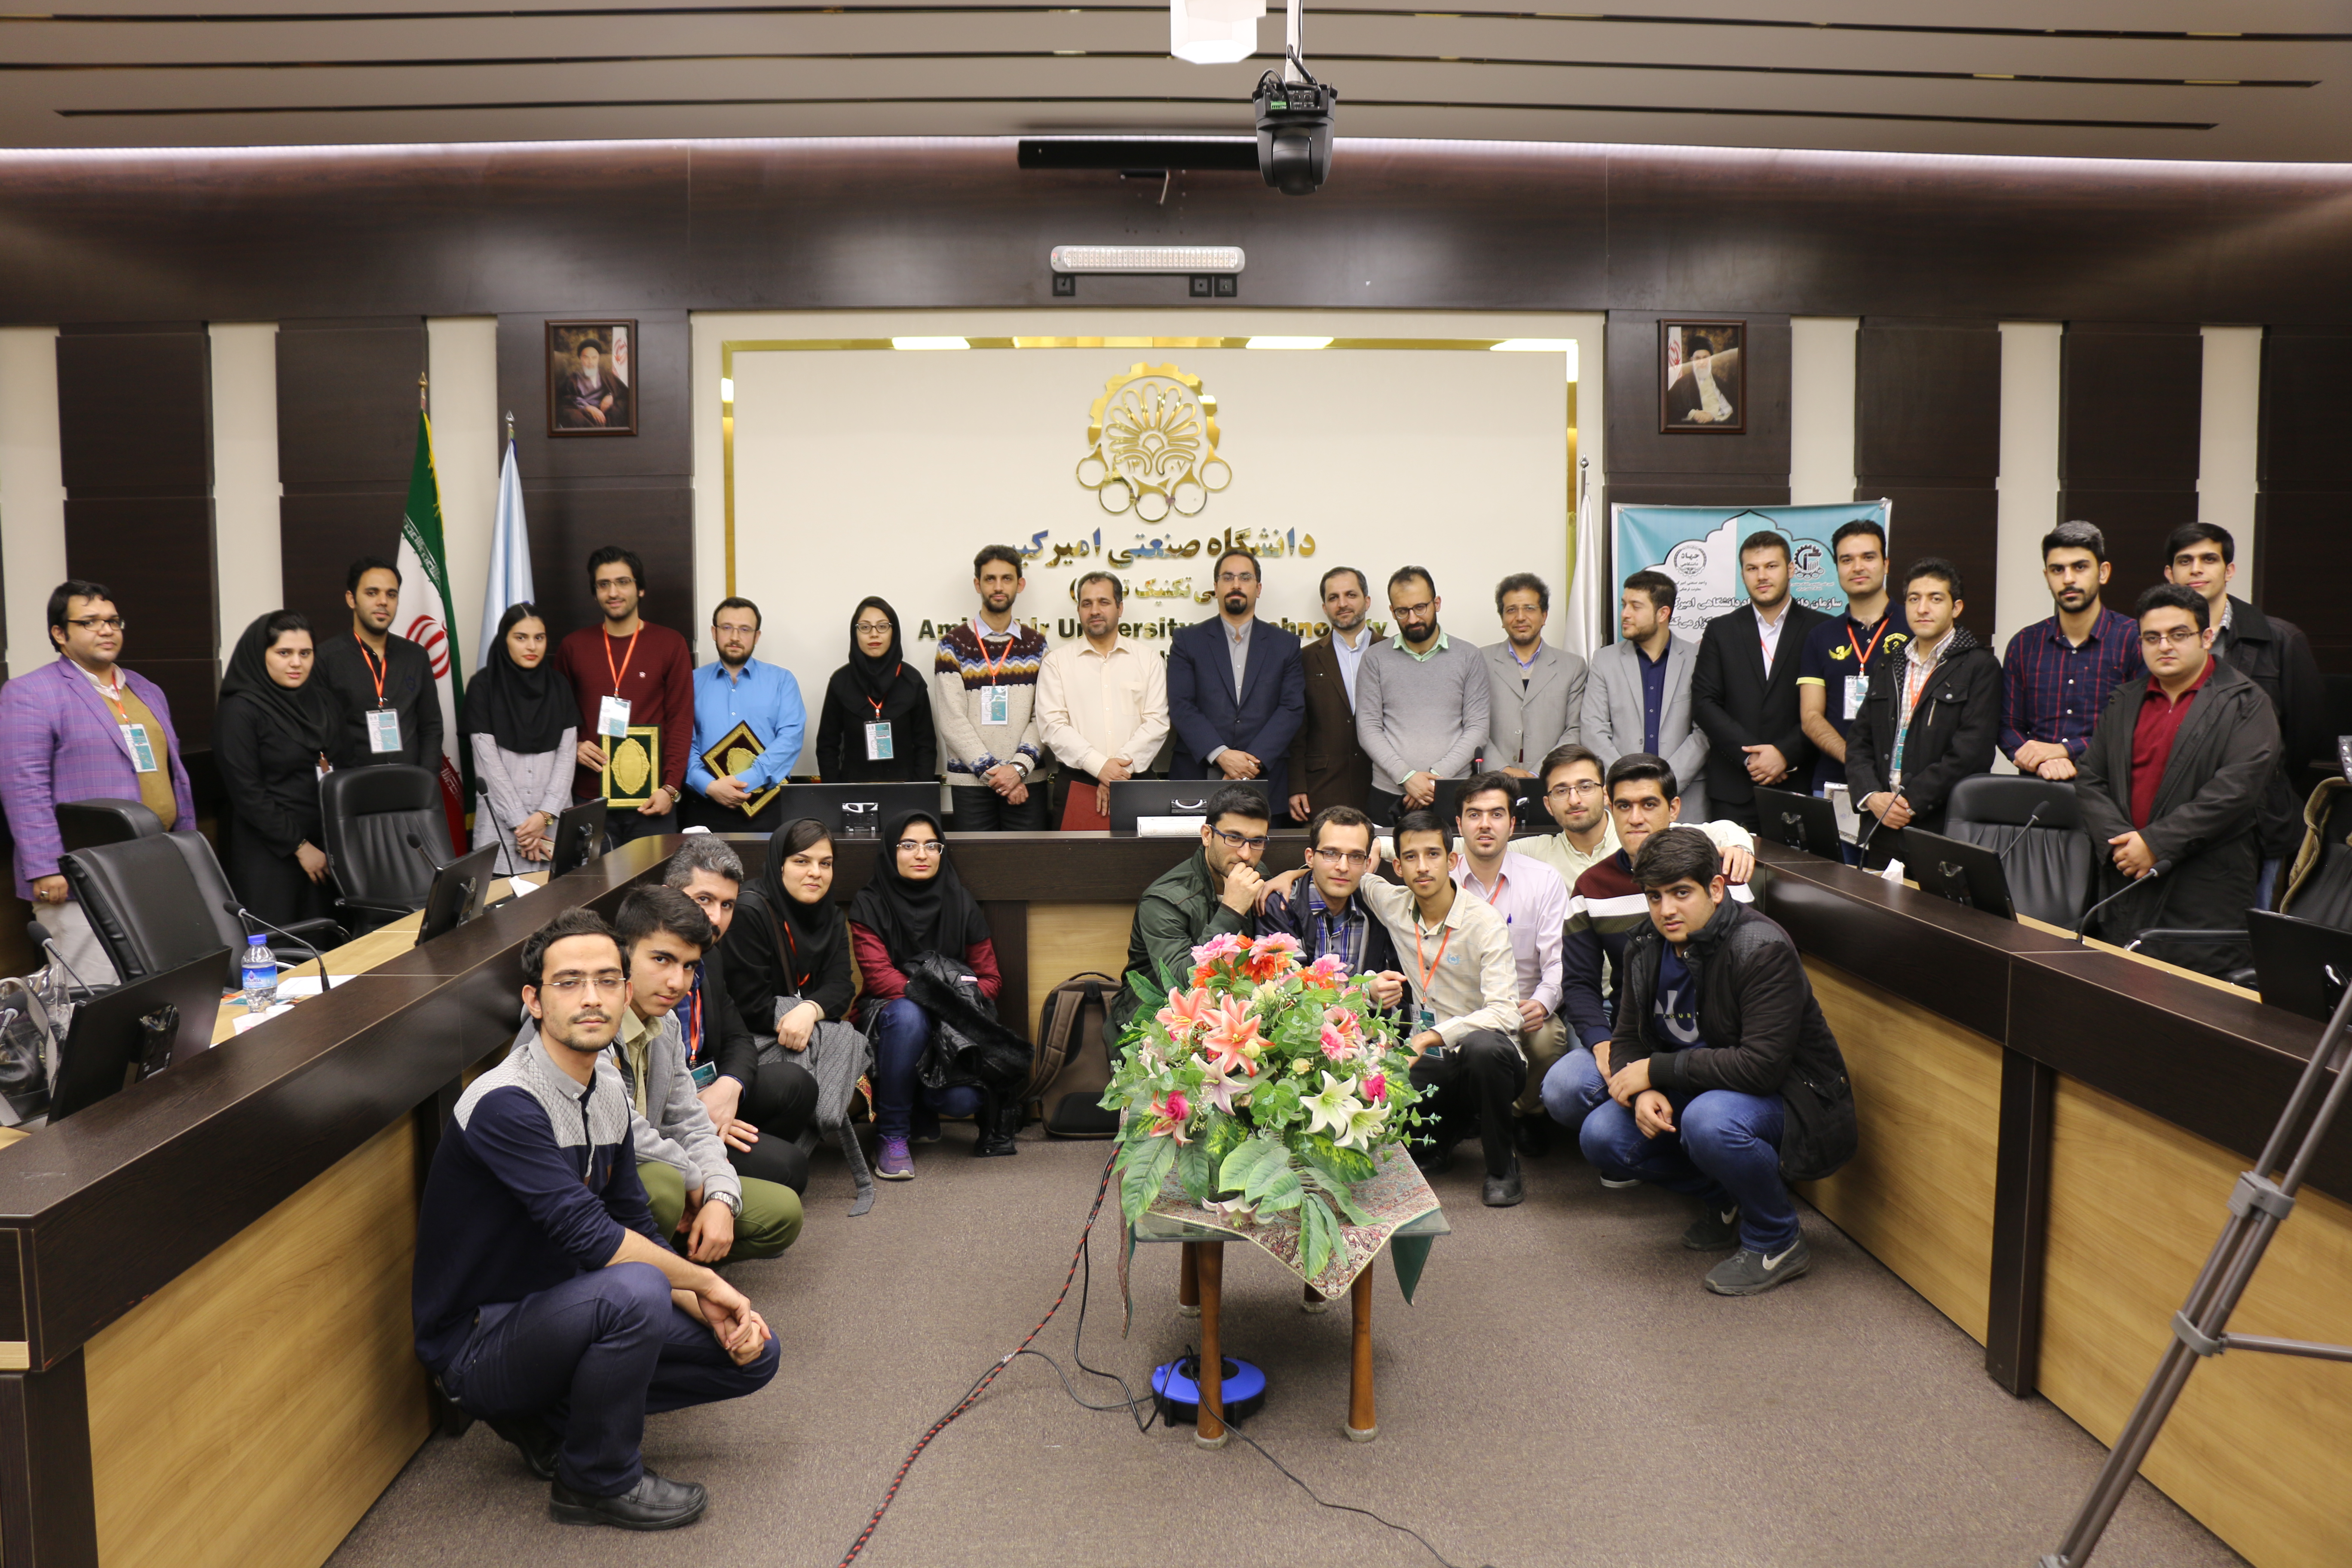 برگزاری سومین دوره مسابقه ملی دفاع 3 دقیقه ای در بخش دانشگاهی- جهاد دانشگاهی امیرکبیر-دی ماه 97